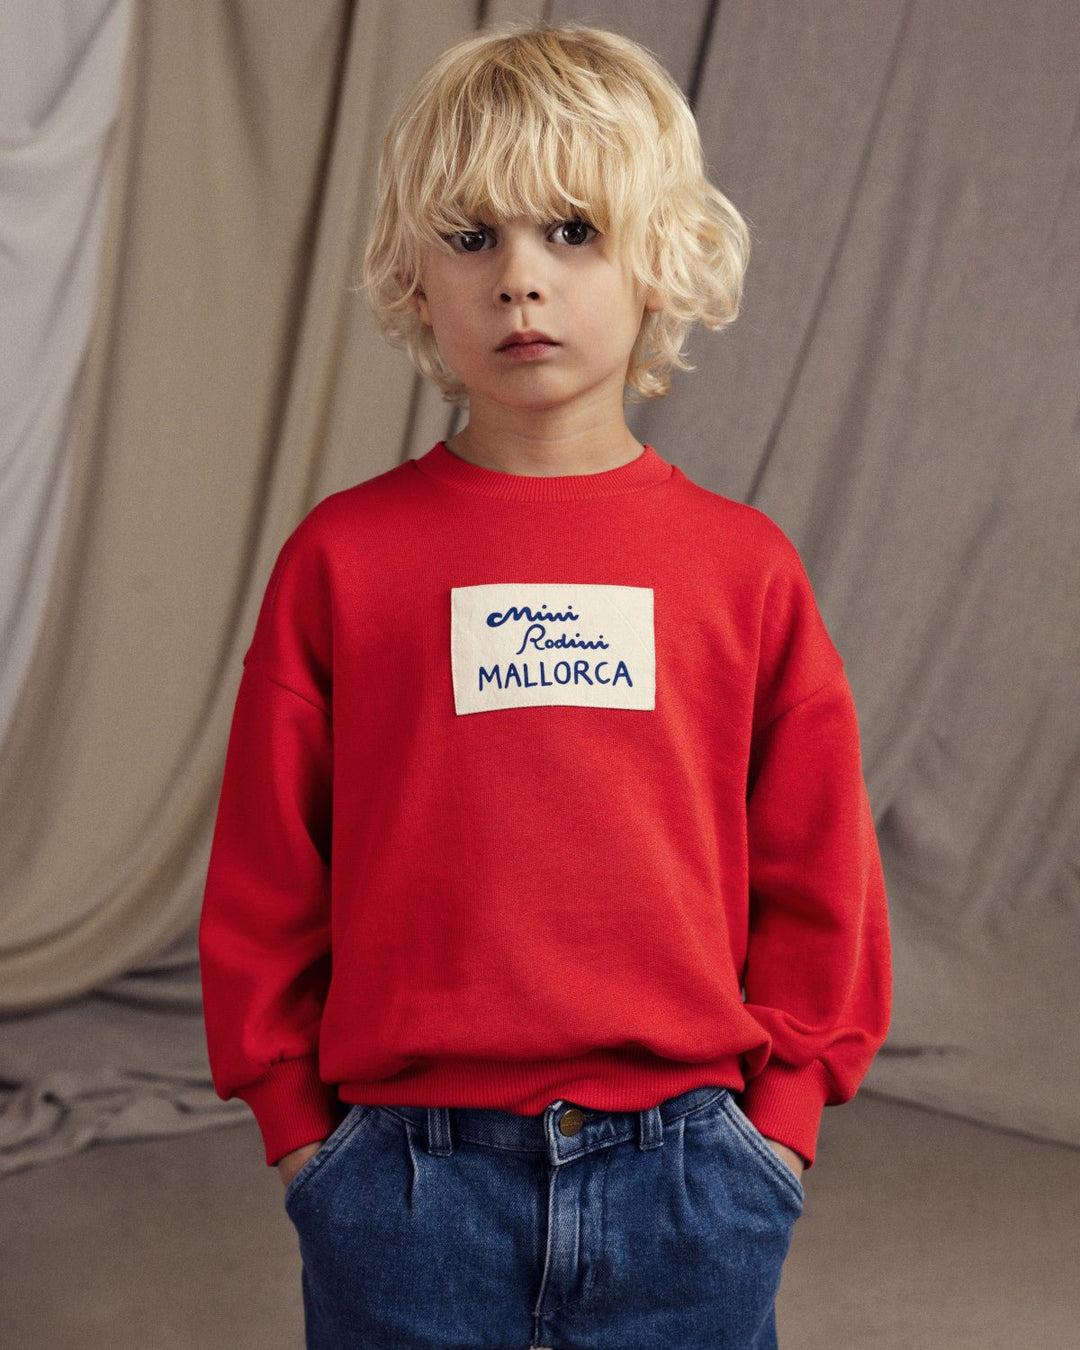 Mallorca Patch Sweatshirt by Mini Rodini - Petite Belle